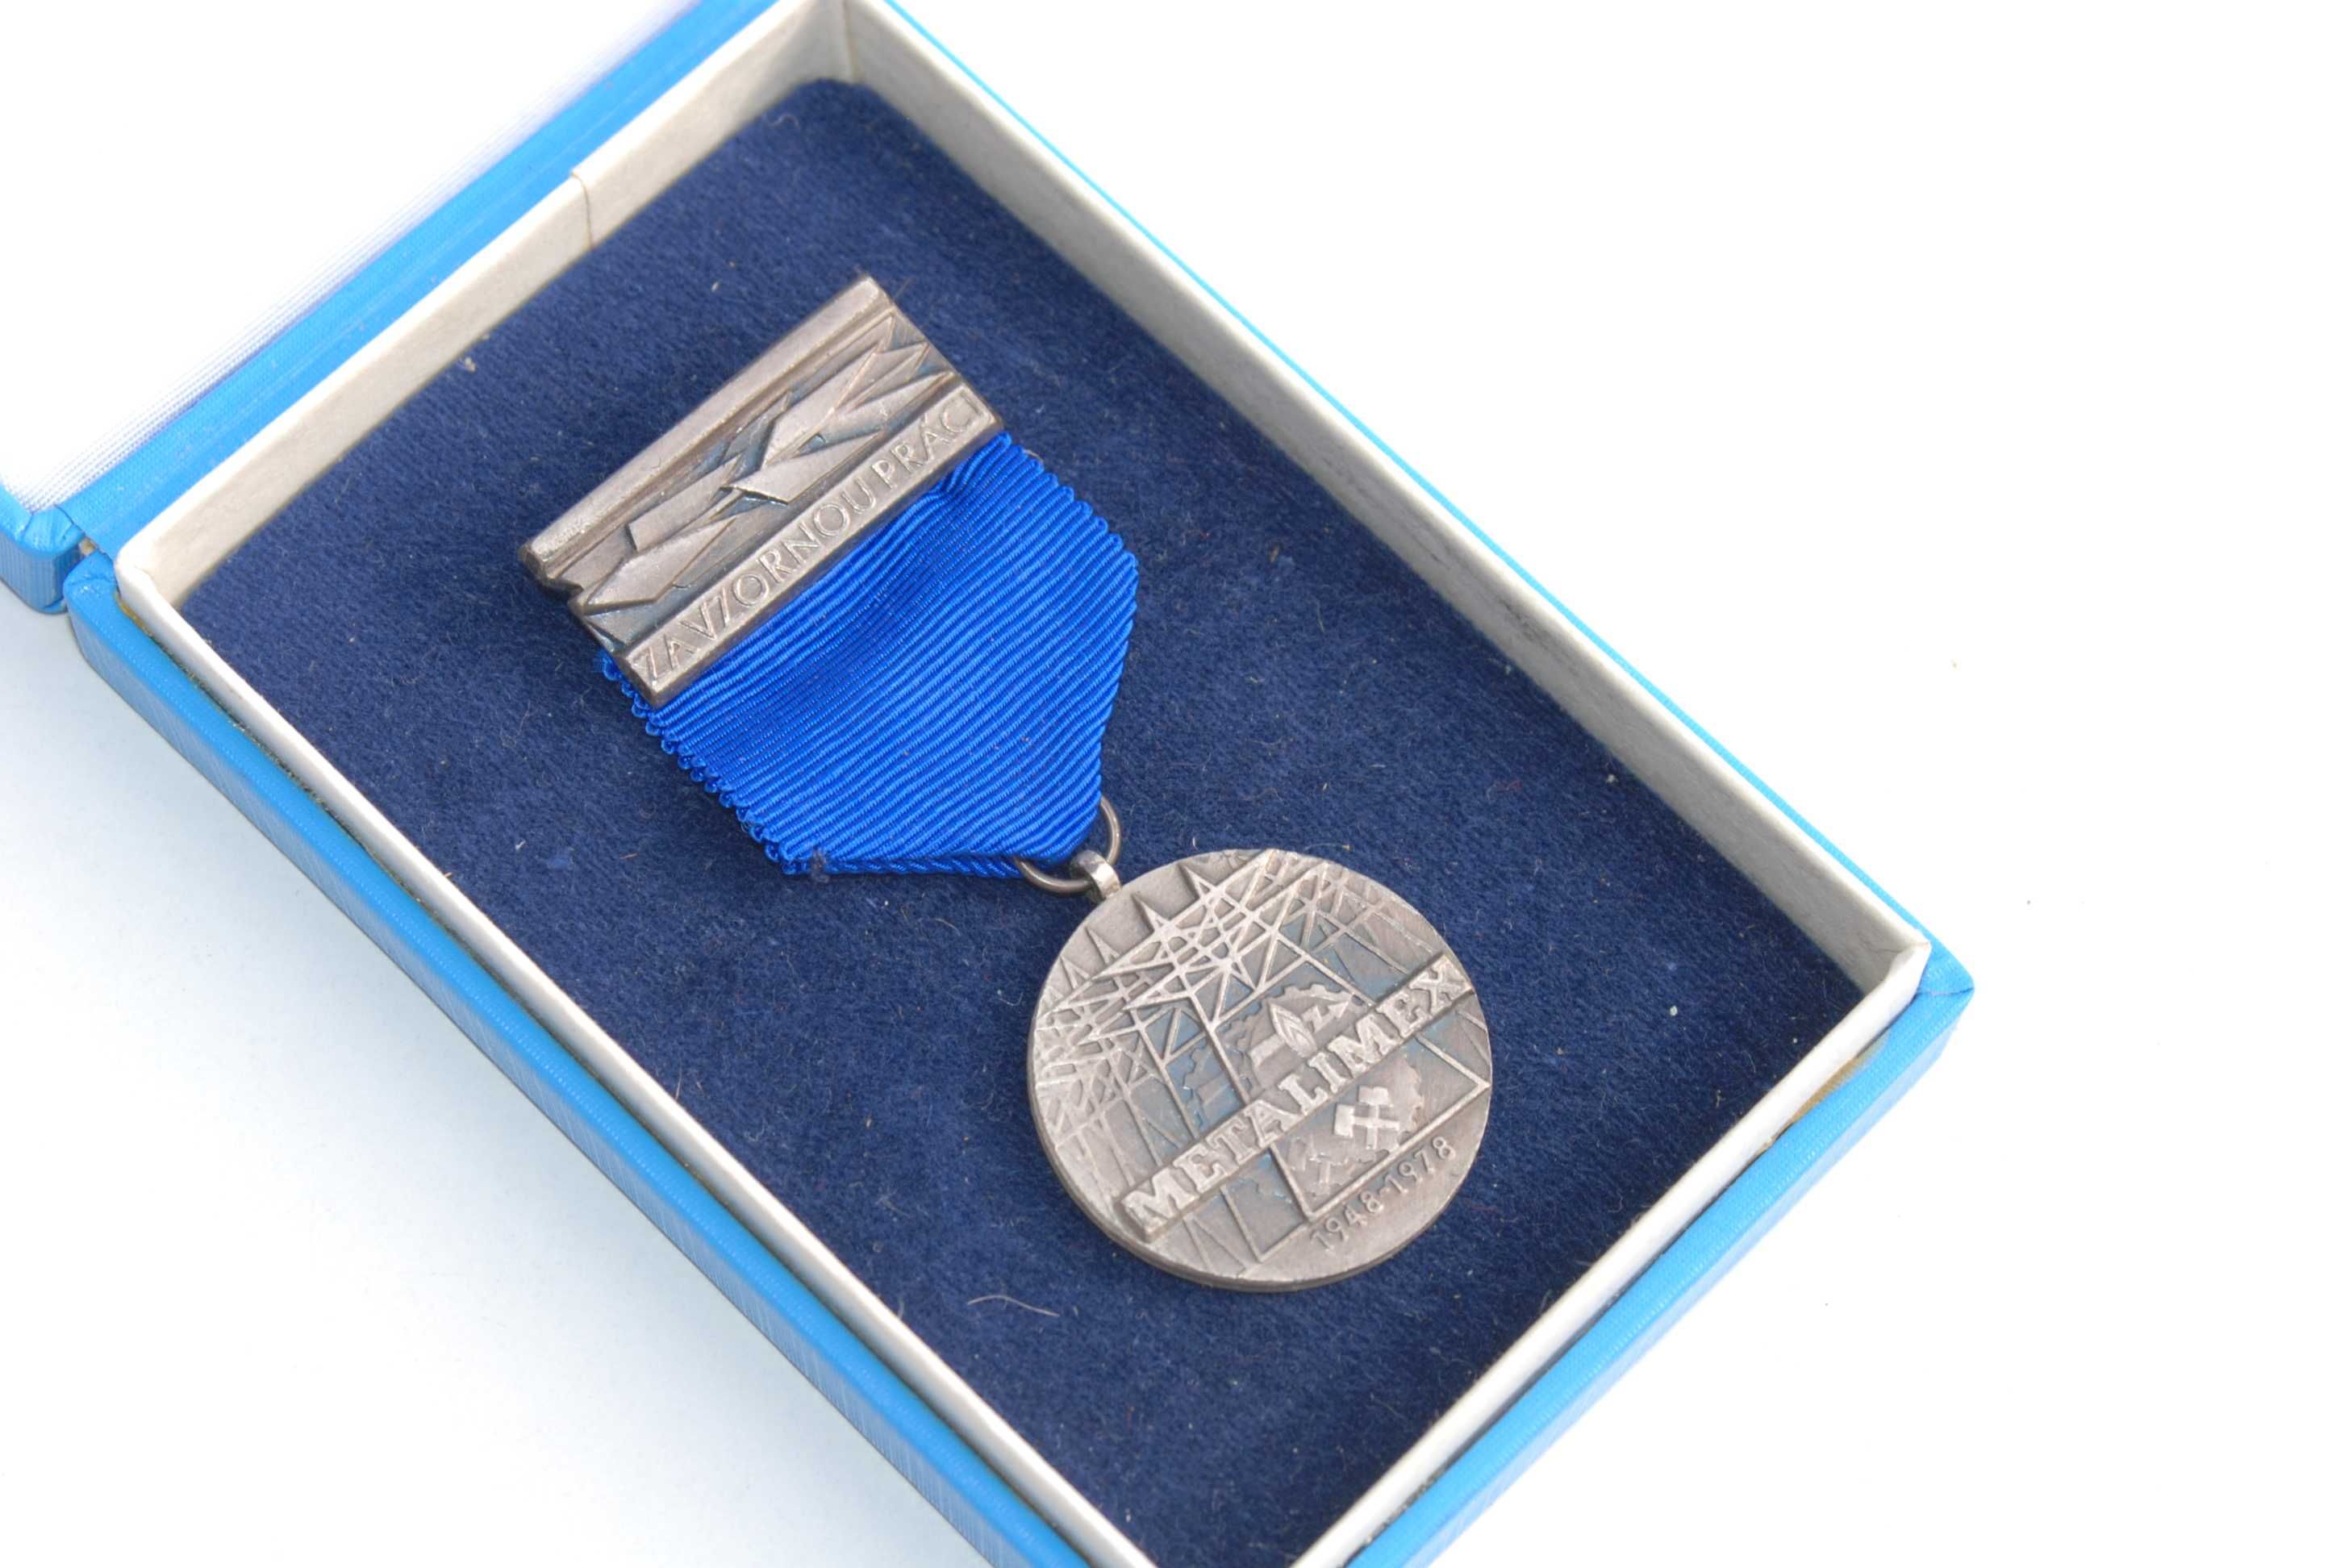 Stara medal zapinka odznaka wpinka 70 lata antyk